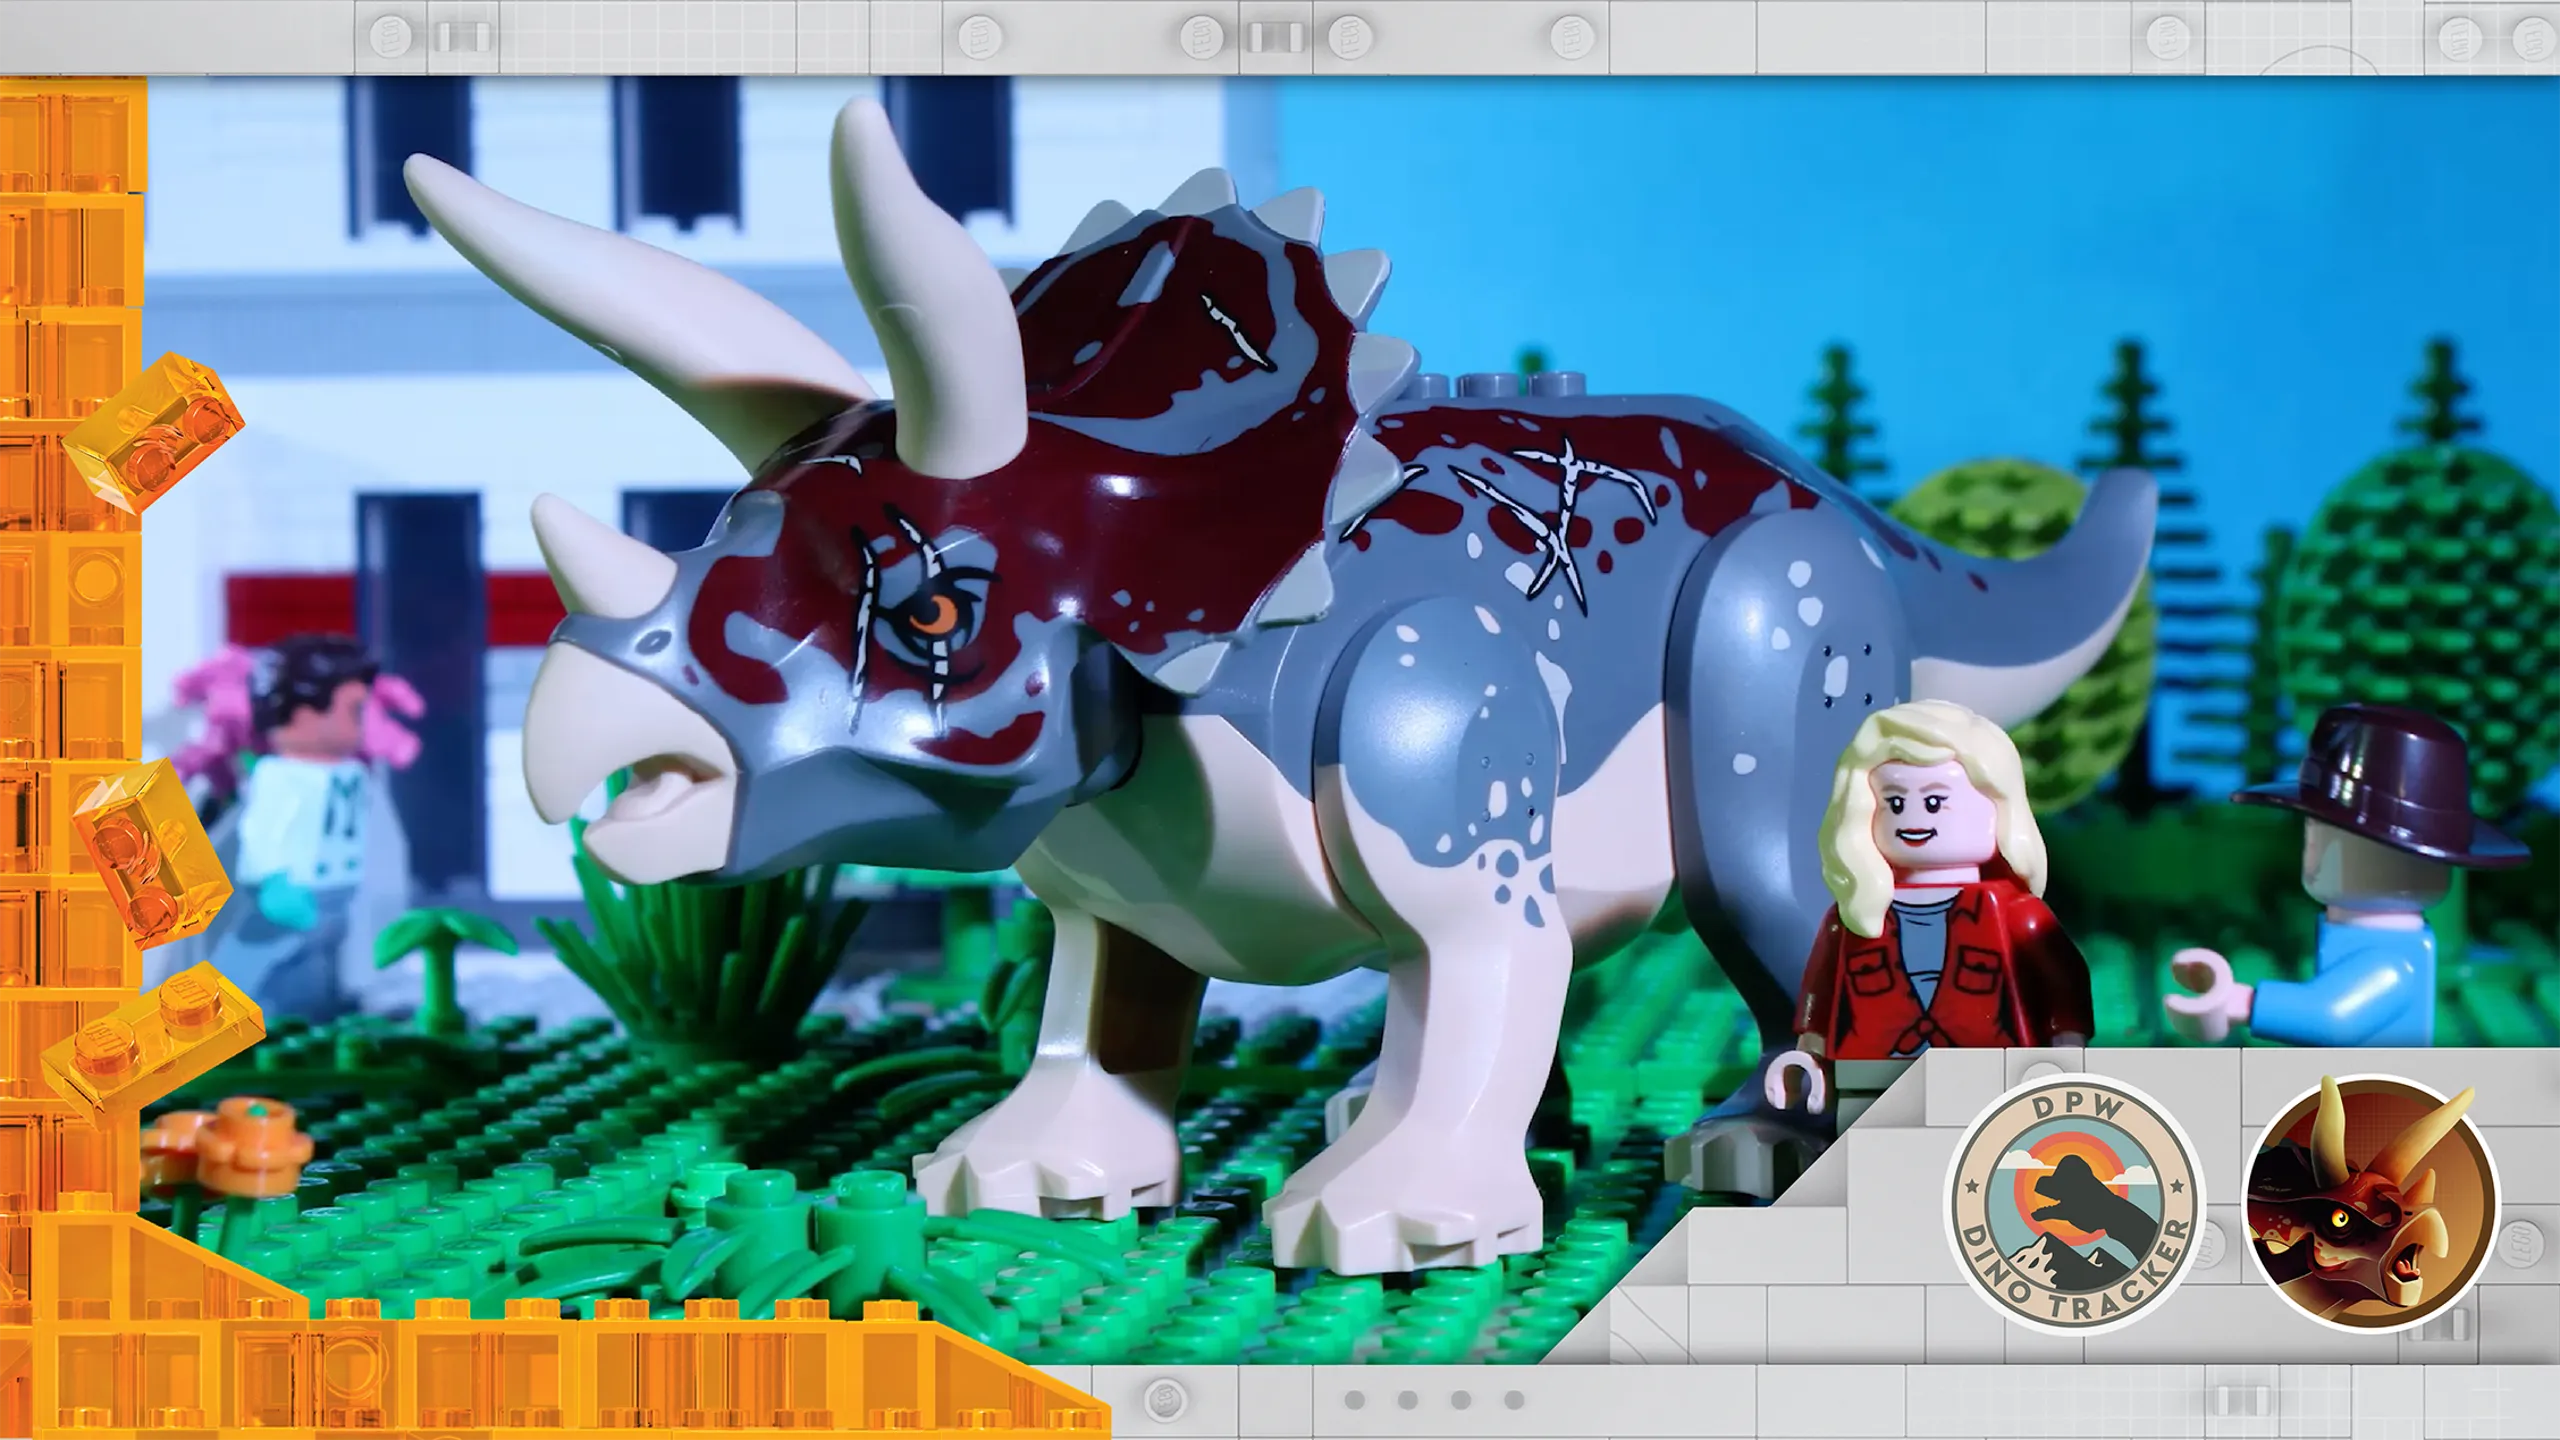 Jeux de construction LEGO®-Jurassic World™ L'affrontement du